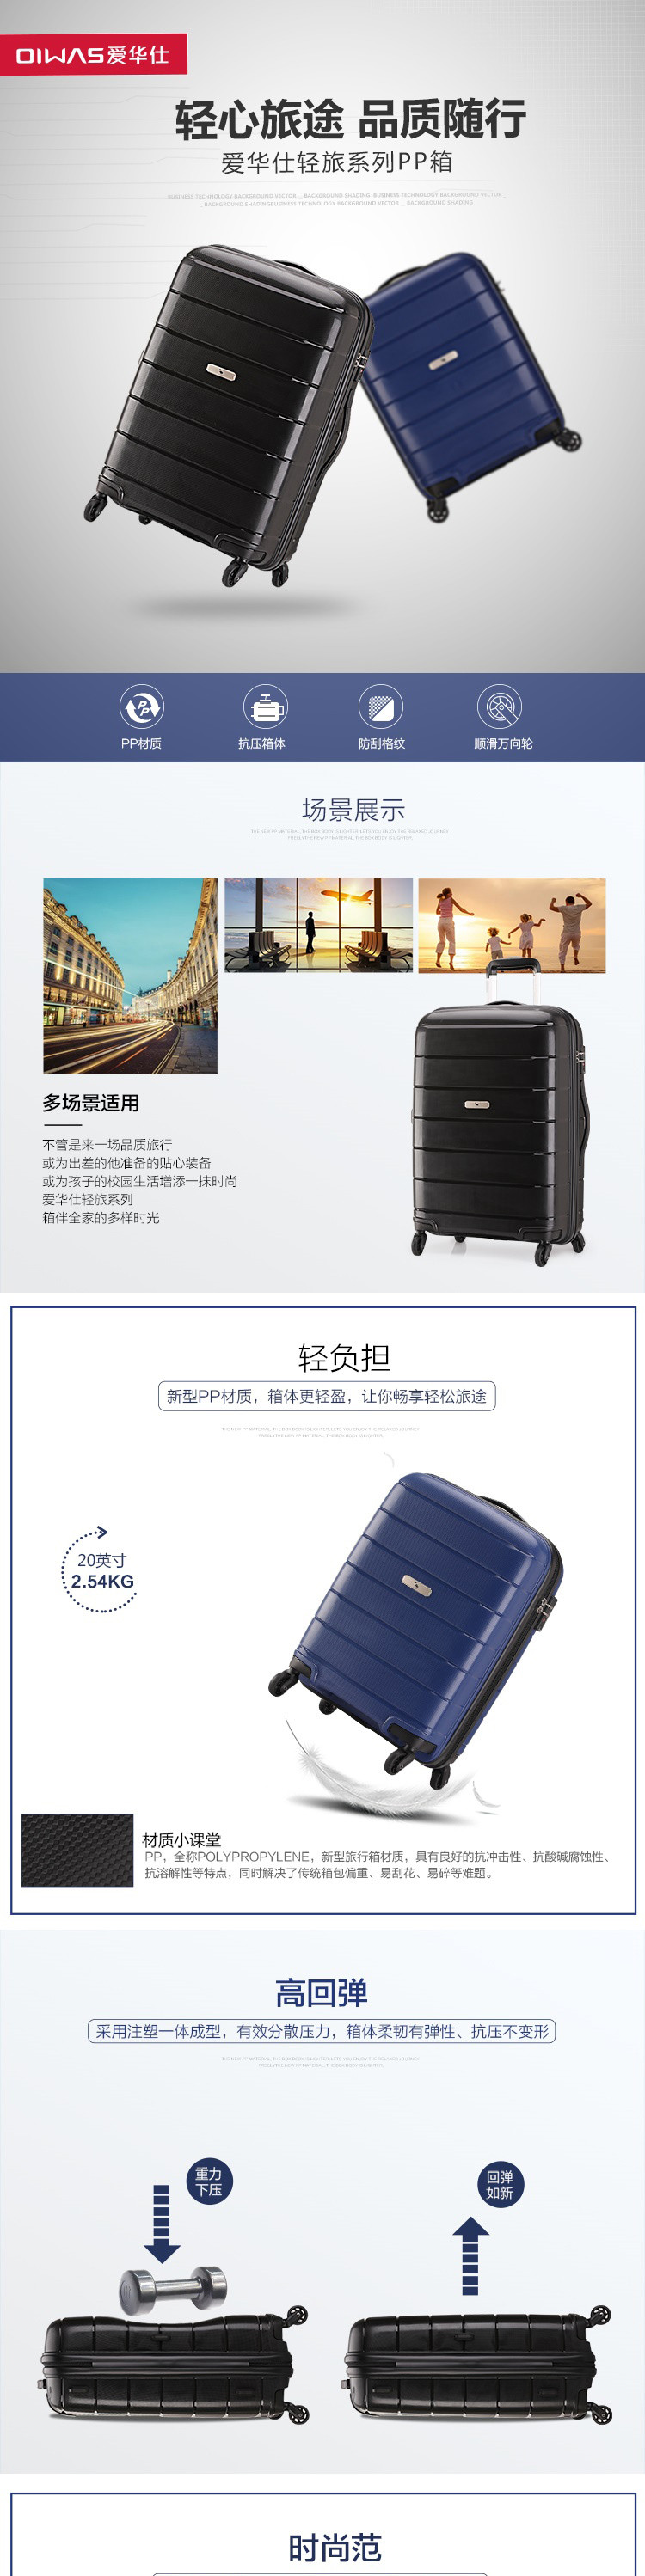 爱华仕/OIWAS  静音万向轮耐磨抗刮行李箱拉杆箱  OCX6501  24寸